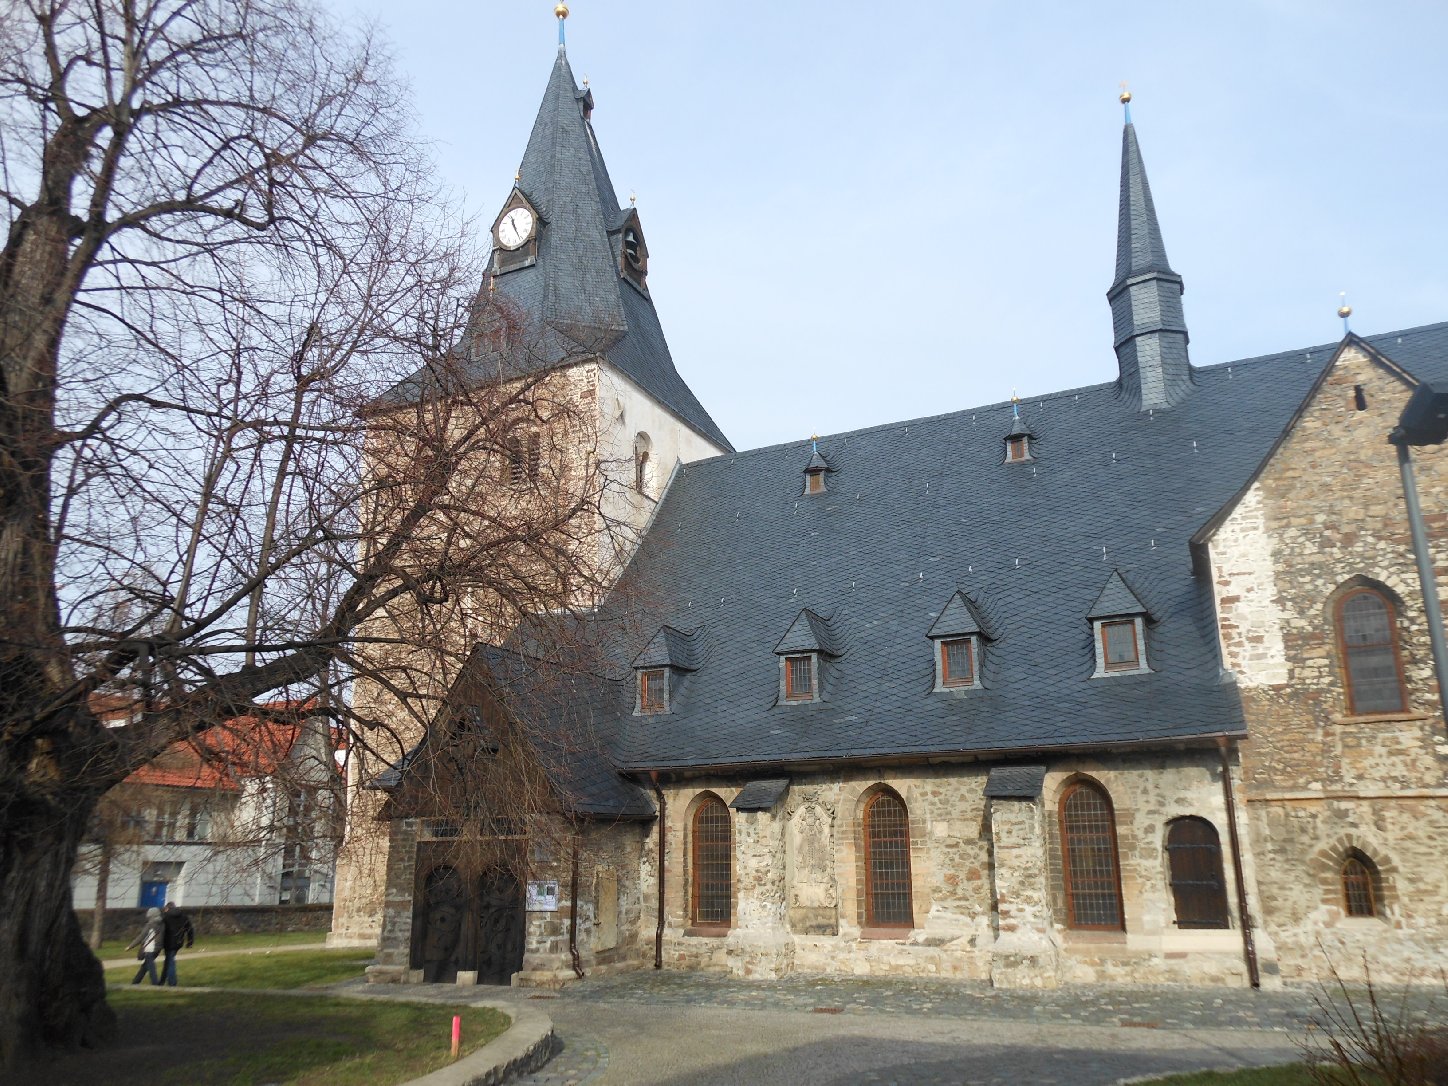 St. Johanniskirche